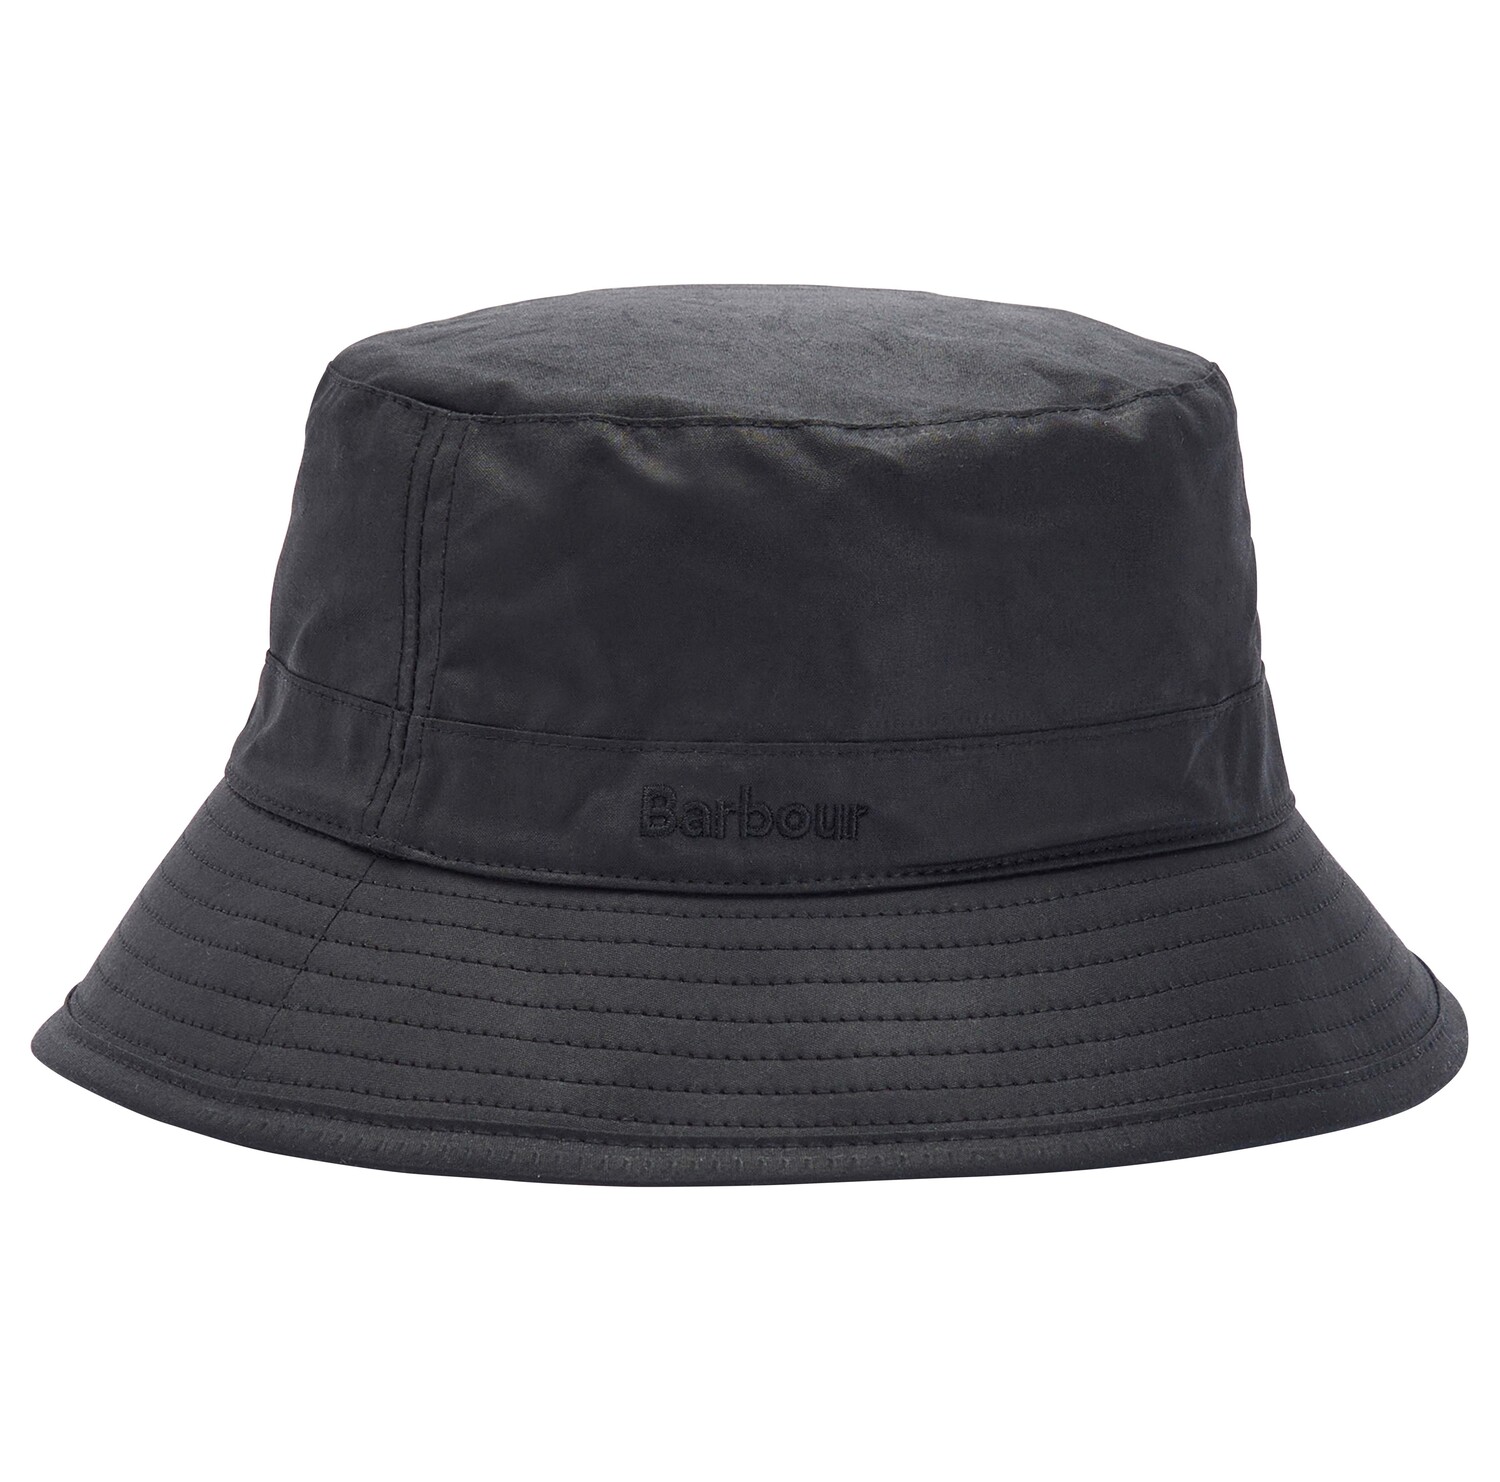 Barbour Men's Wax Sports Bucket Hat - (Black) | 5